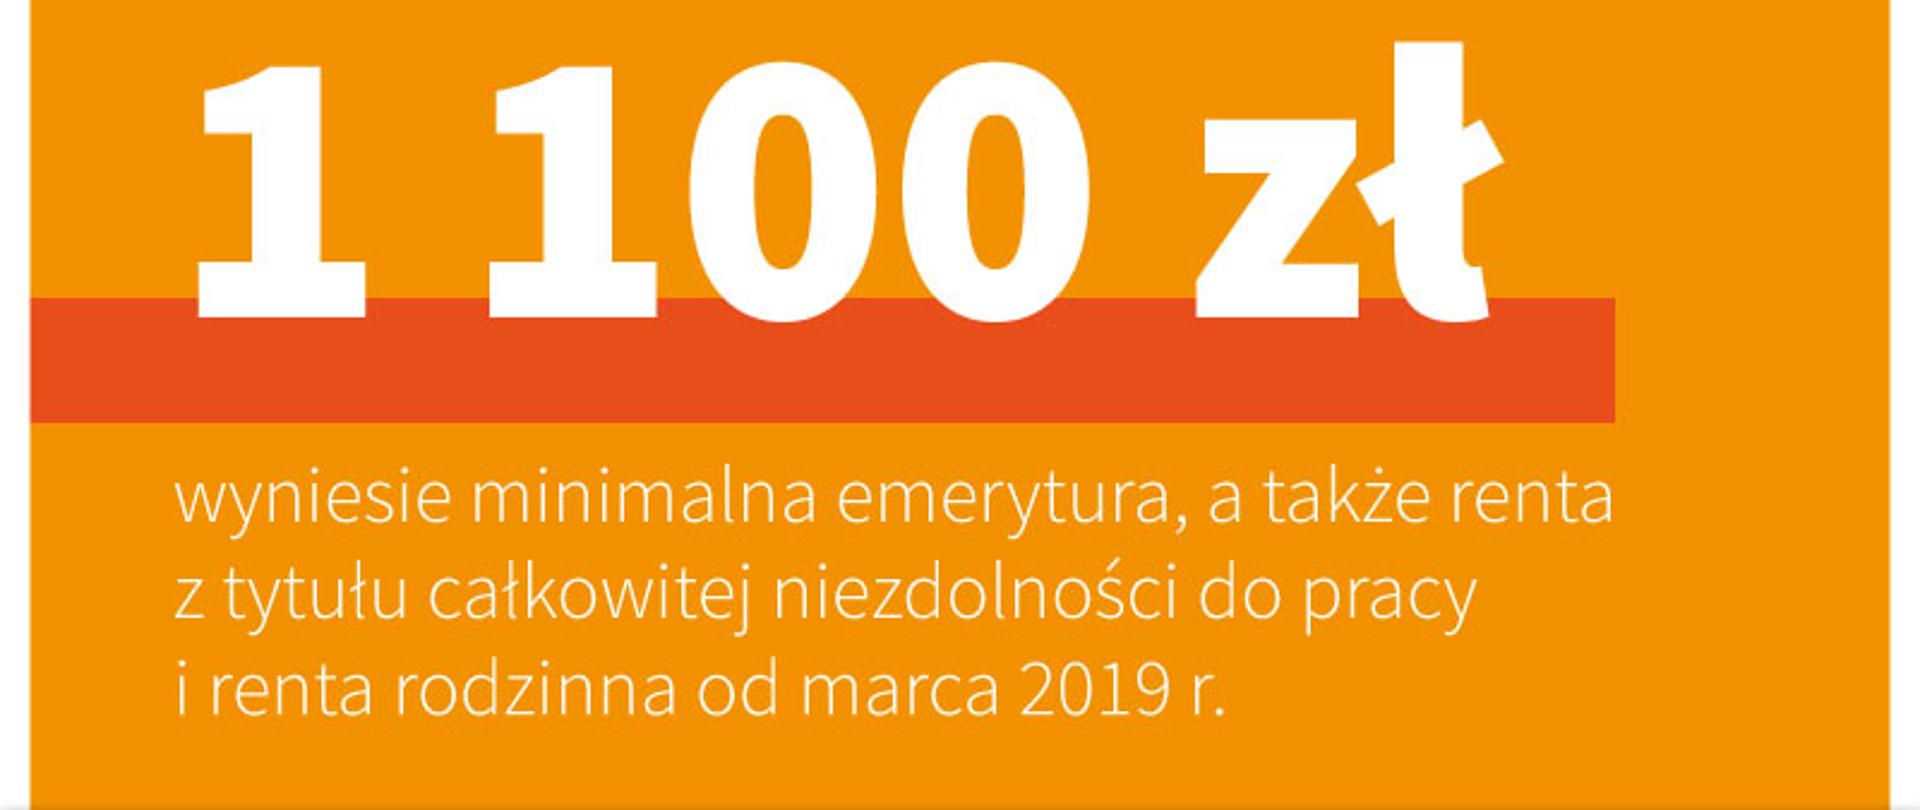 1100 zł wyniesie najniższa emerytura, a także renta z tytułu całkowitej niezdolności do pracy i renta rodzinna od marca 2019 r.